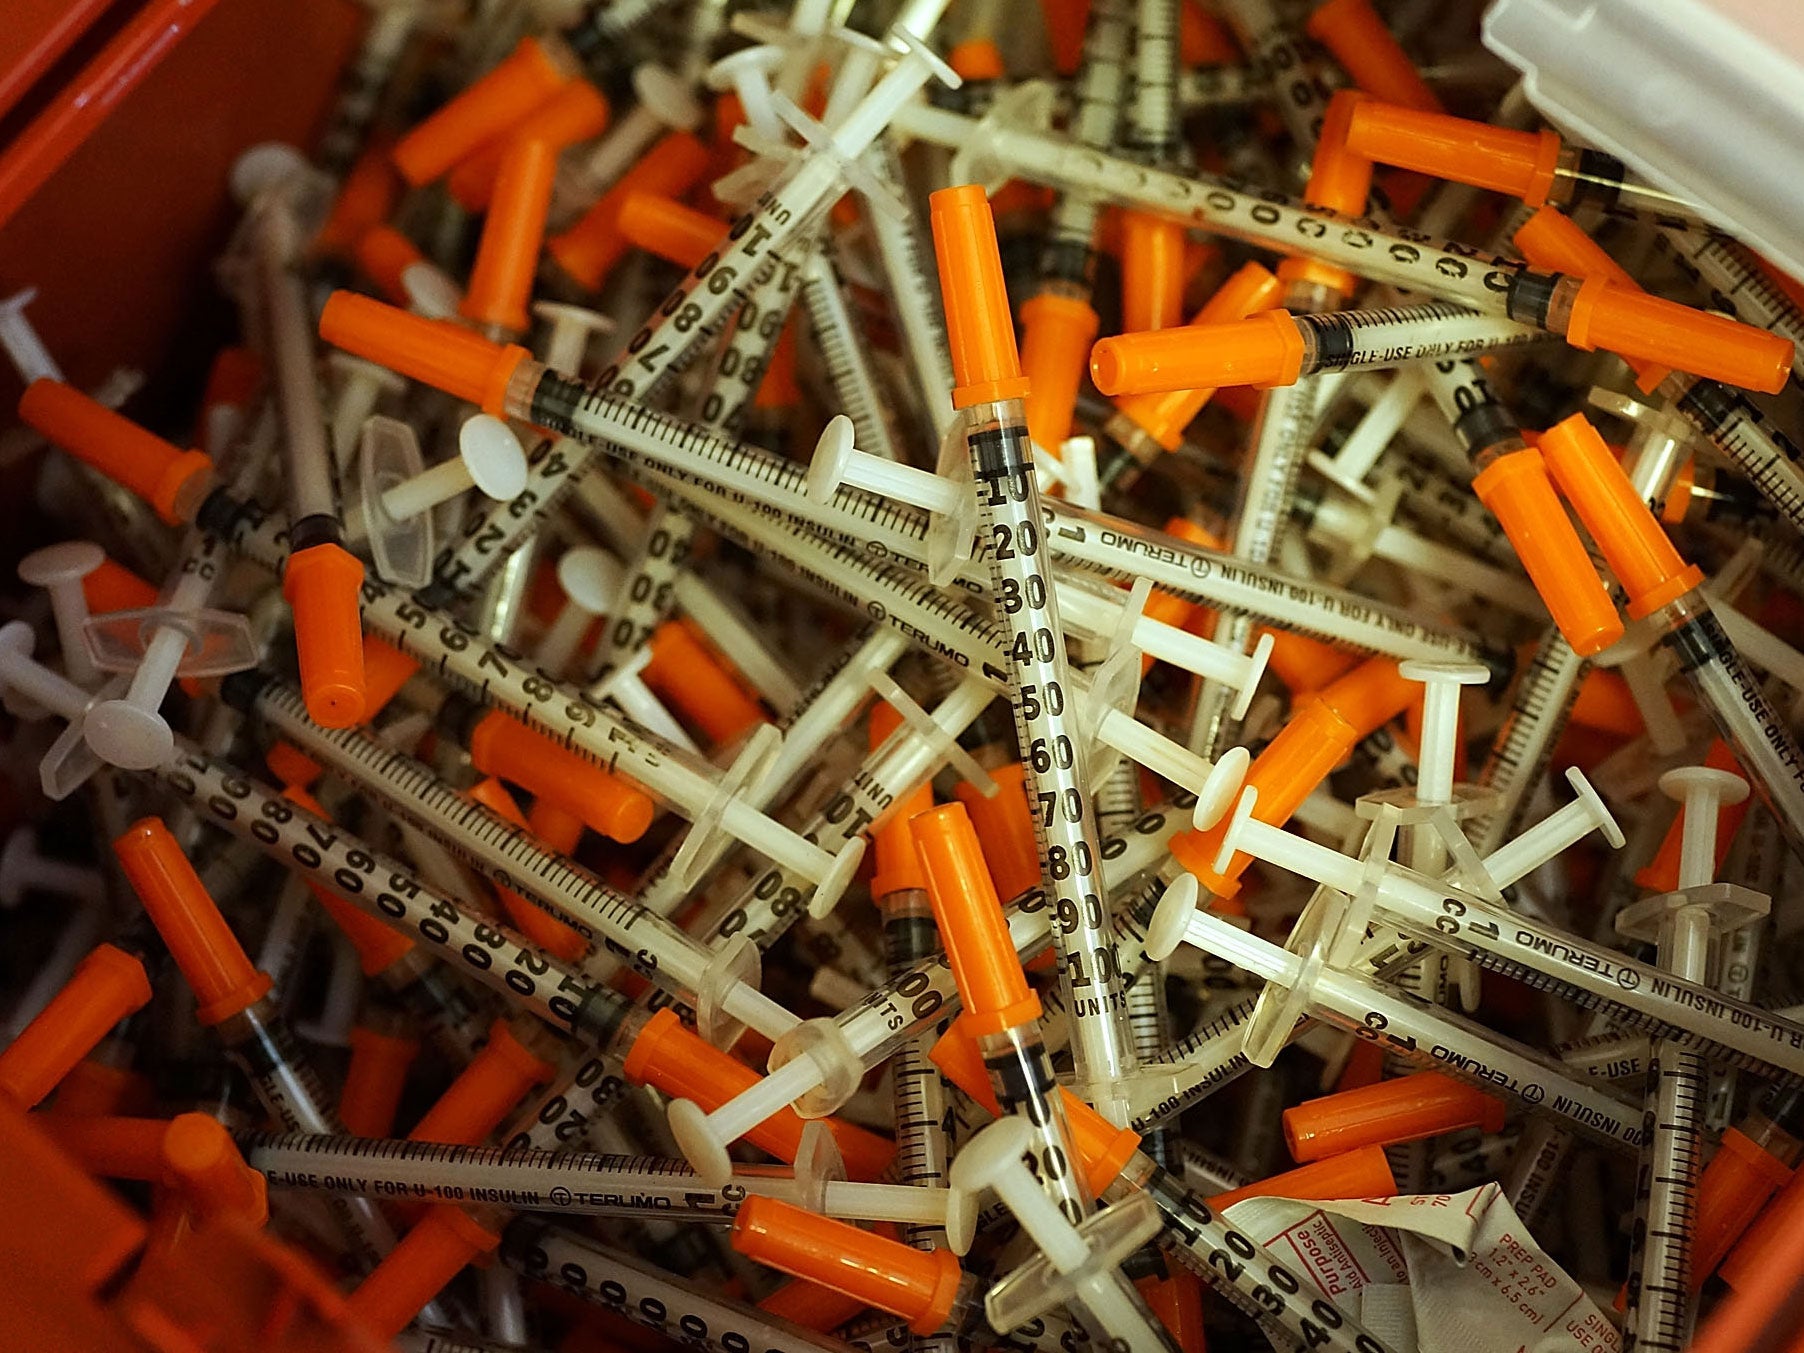 Used syringes